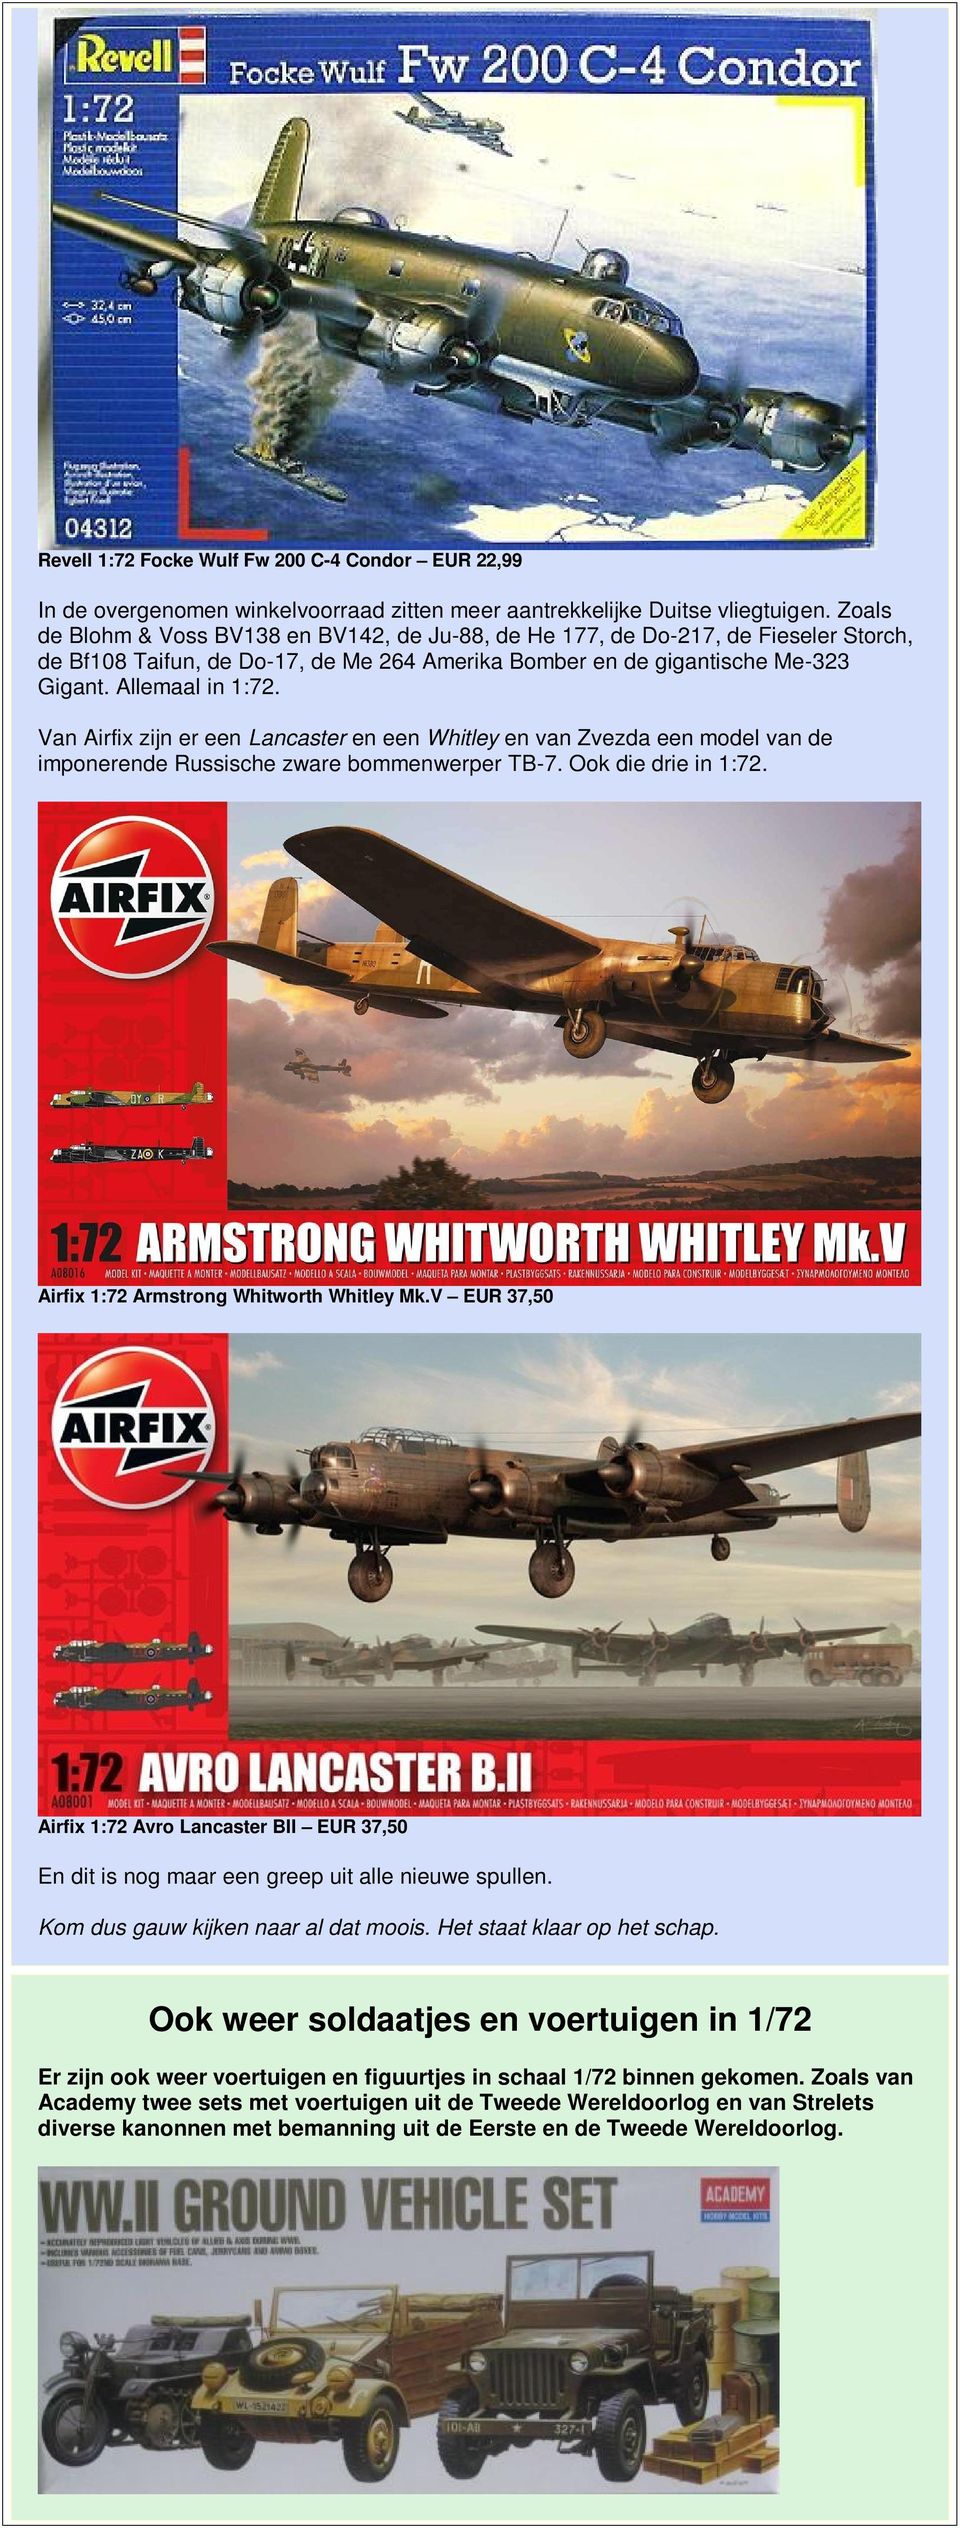 Van Airfix zijn er een Lancaster en een Whitley en van Zvezda een model van de imponerende Russische zware bommenwerper TB-7. Ook die drie in 1:72. Airfix 1:72 Armstrong Whitworth Whitley Mk.